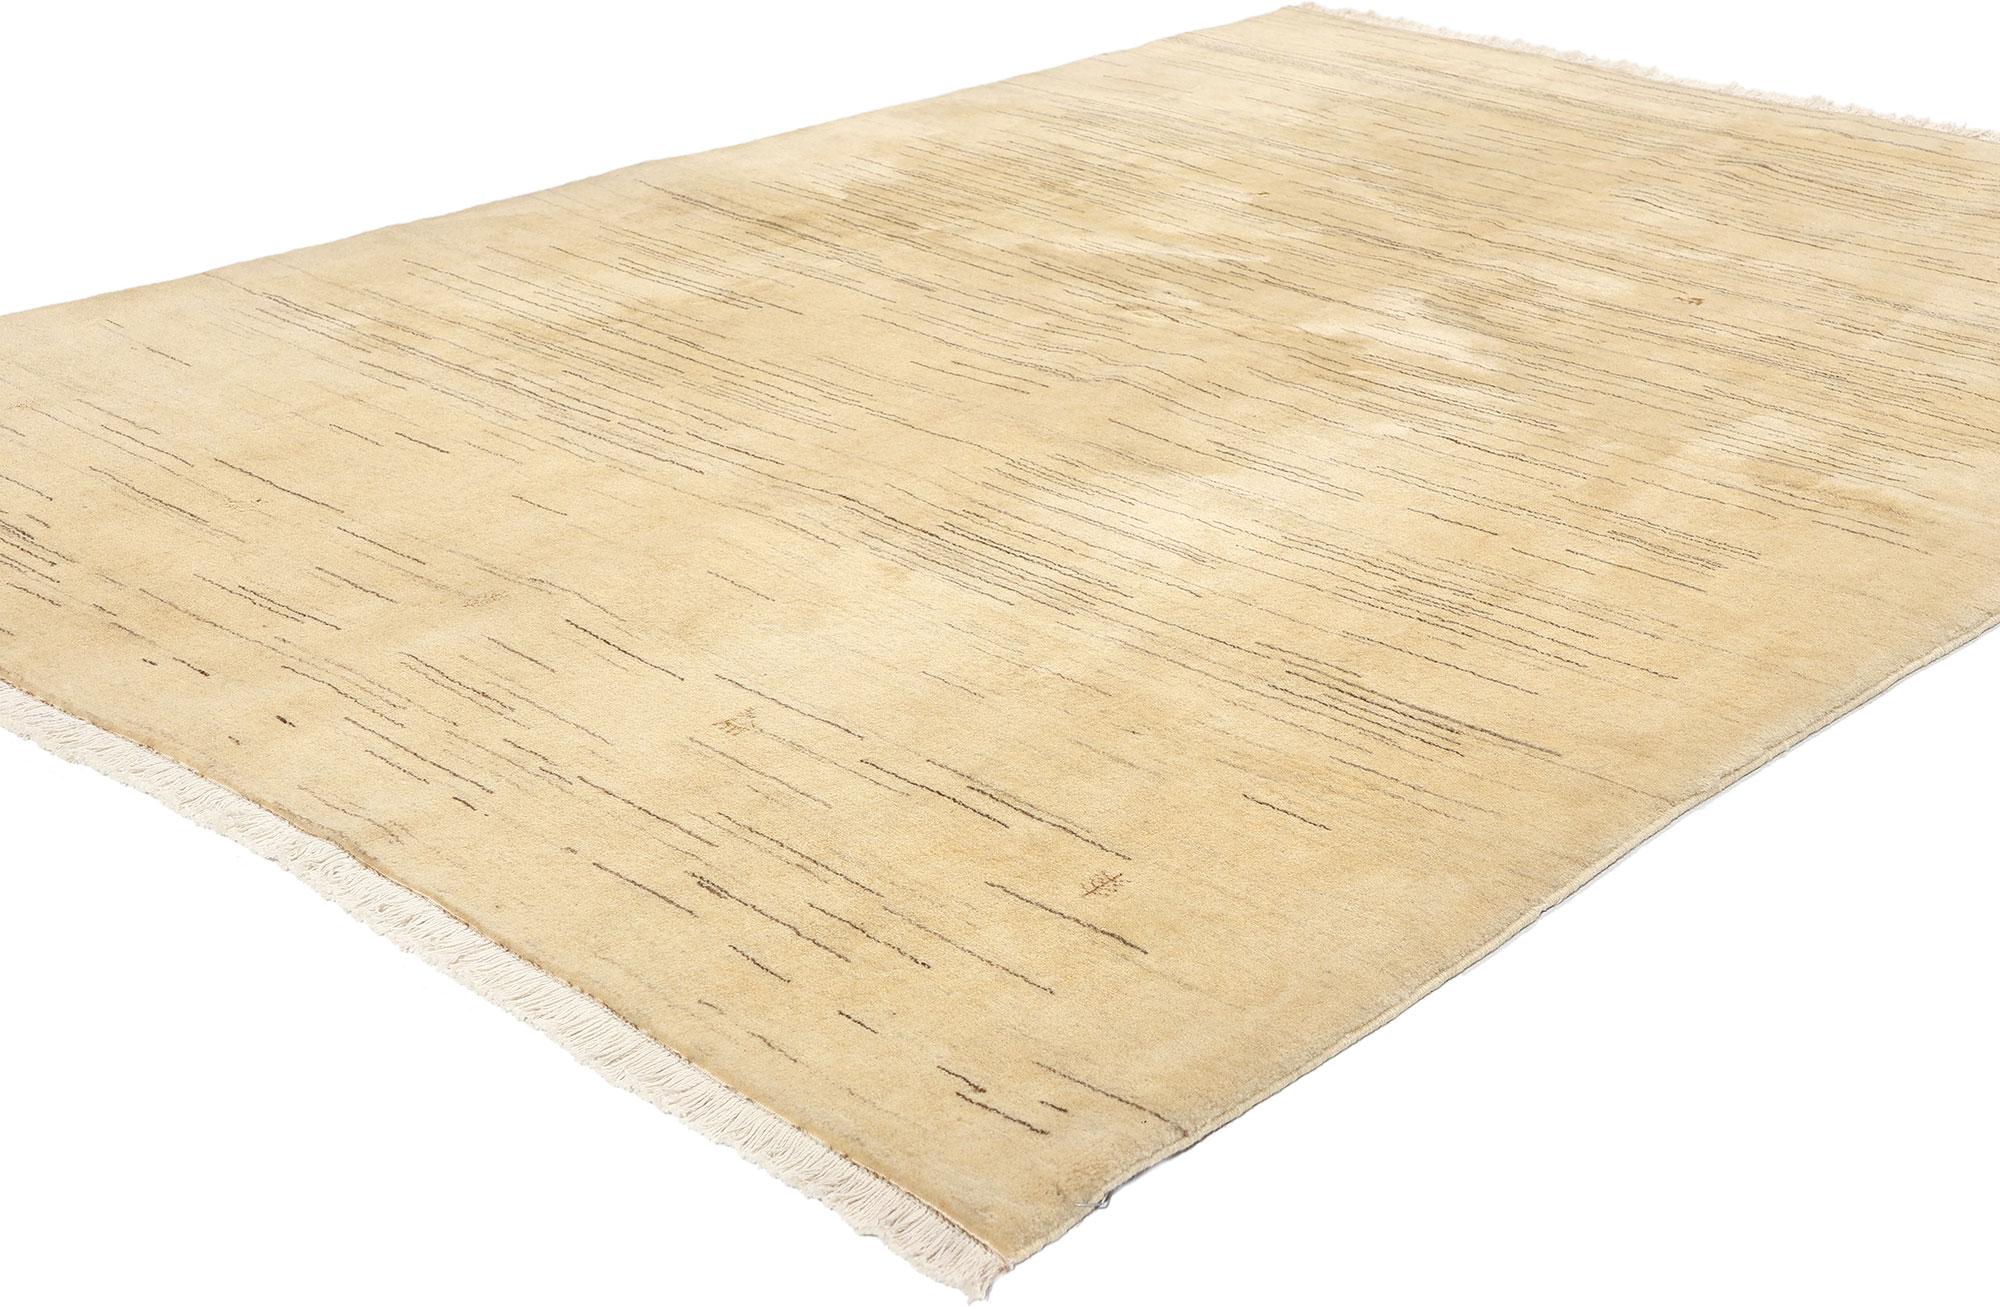 61169 Tapis persan vintage Gabbeh, 05'02 x 07'06. Les tapis persans neutres Gabbeh sont un type de tapis persans traditionnels connus pour leur simplicité, leurs poils épais et leur palette de couleurs discrètes, généralement dans des tons terreux